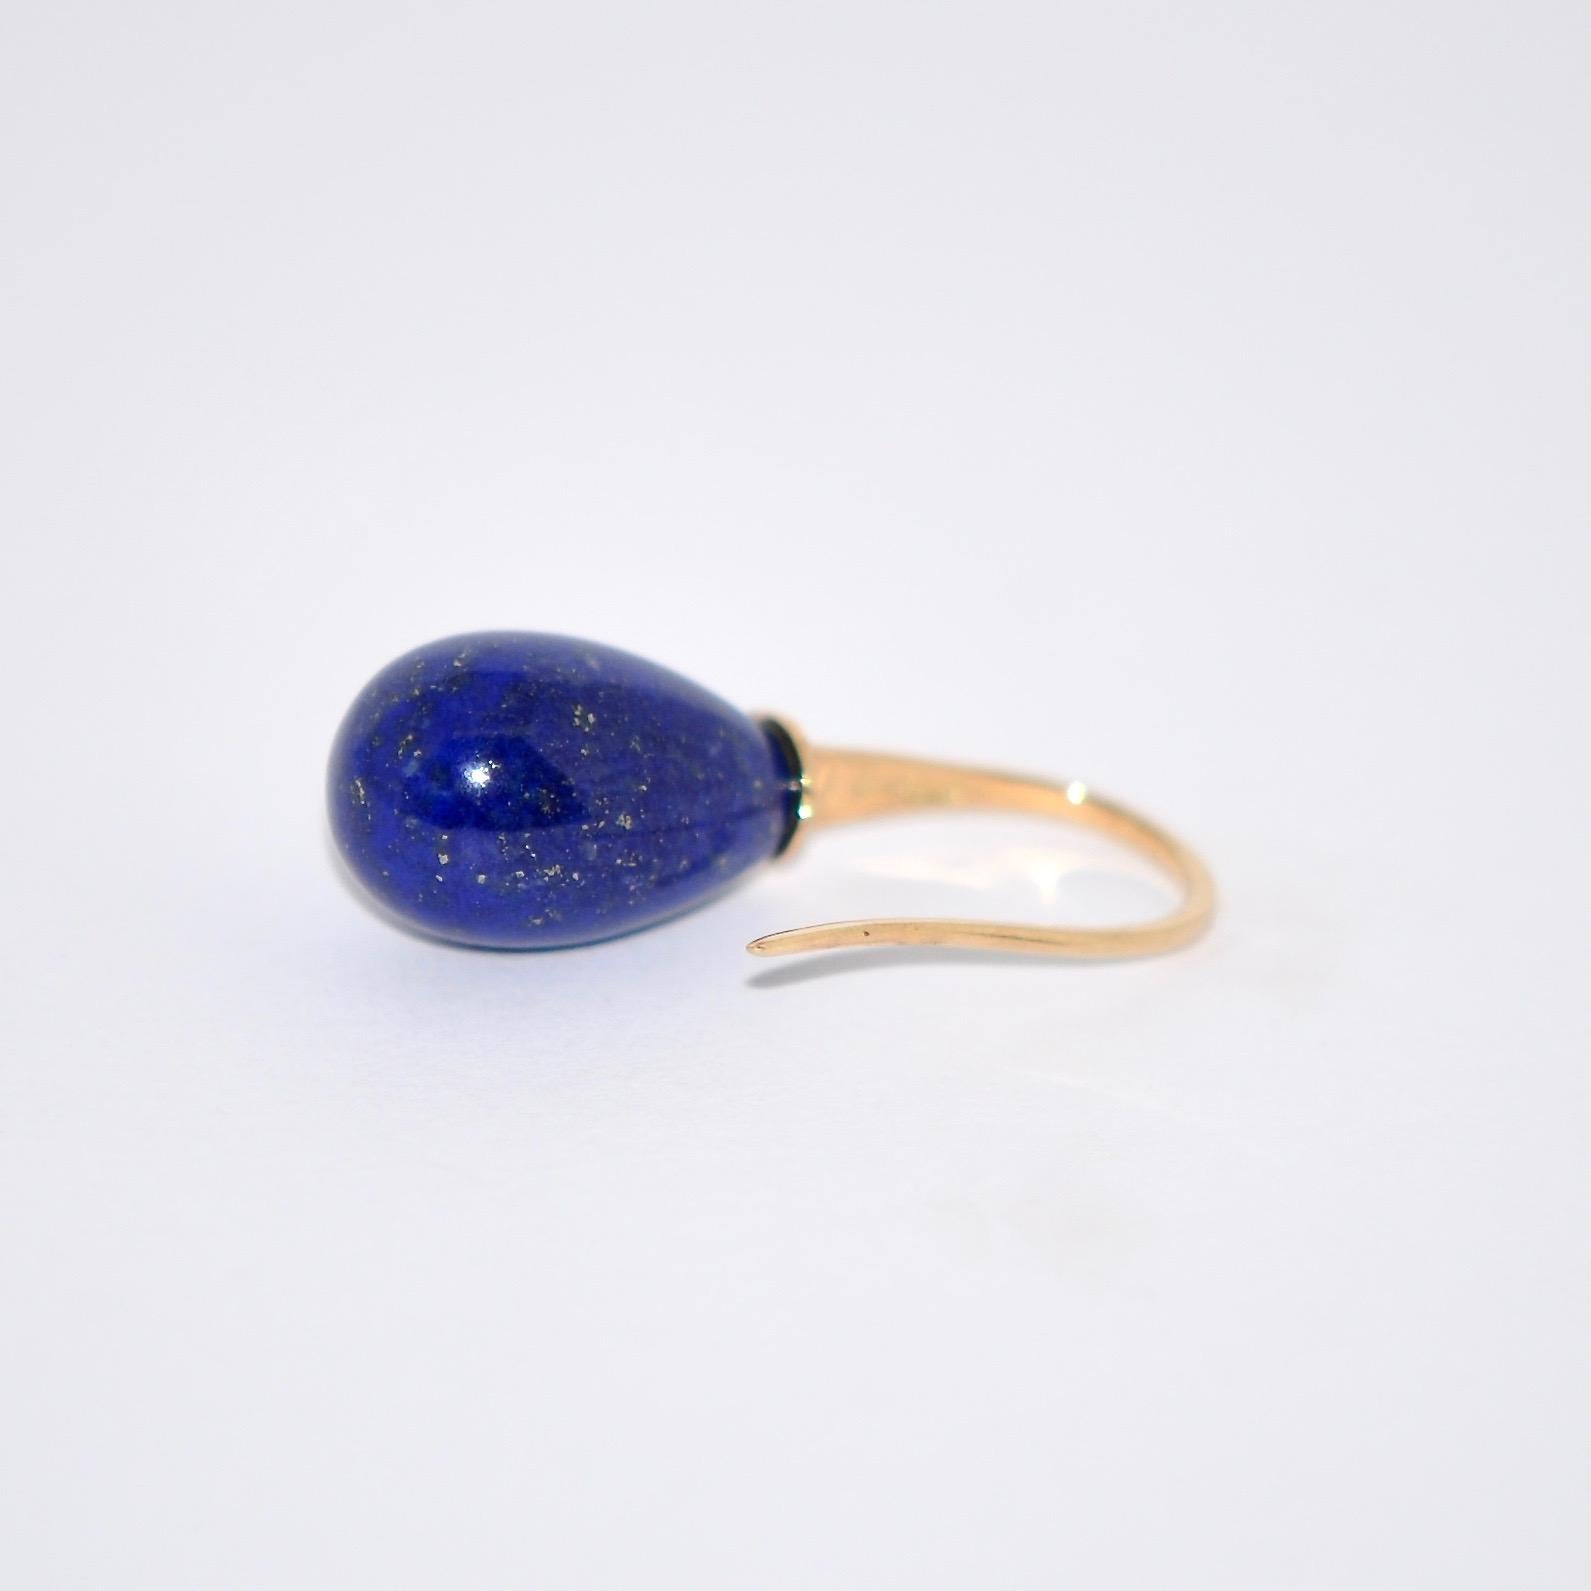 Pendants d'oreilles en lapis-lazuli et or jaune 18 carats
Collection française de Mesure et Art du Temps.

Découvrez ces boucles d'oreilles en lapis-lazuli et or jaune 18 carats.
L'avantage du Lapis Lazuli est qu'il utilise l'énergie de l'eau. Il